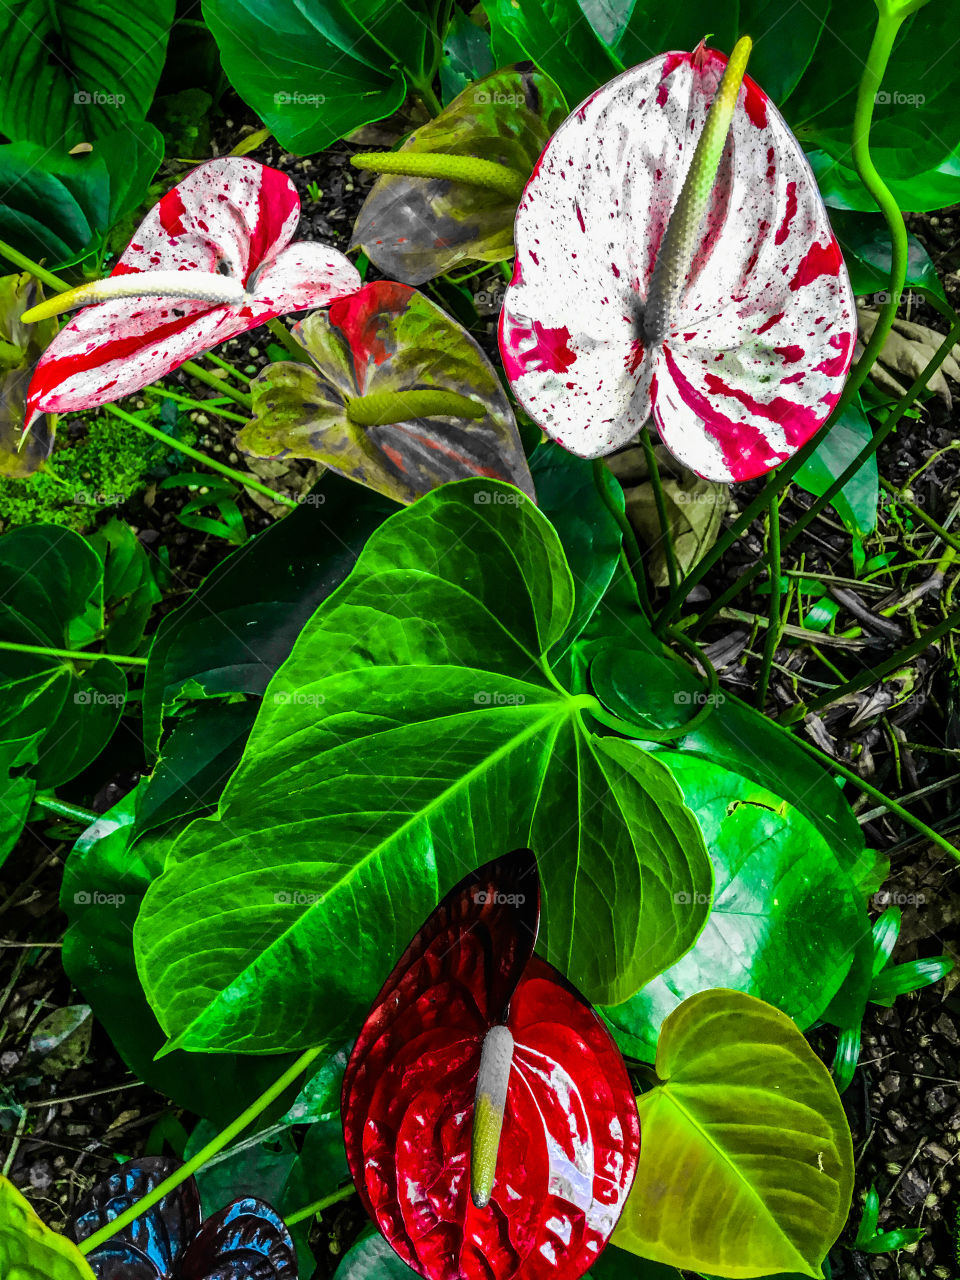 Anthuriums at Hawaii Tropical Botanical Garden